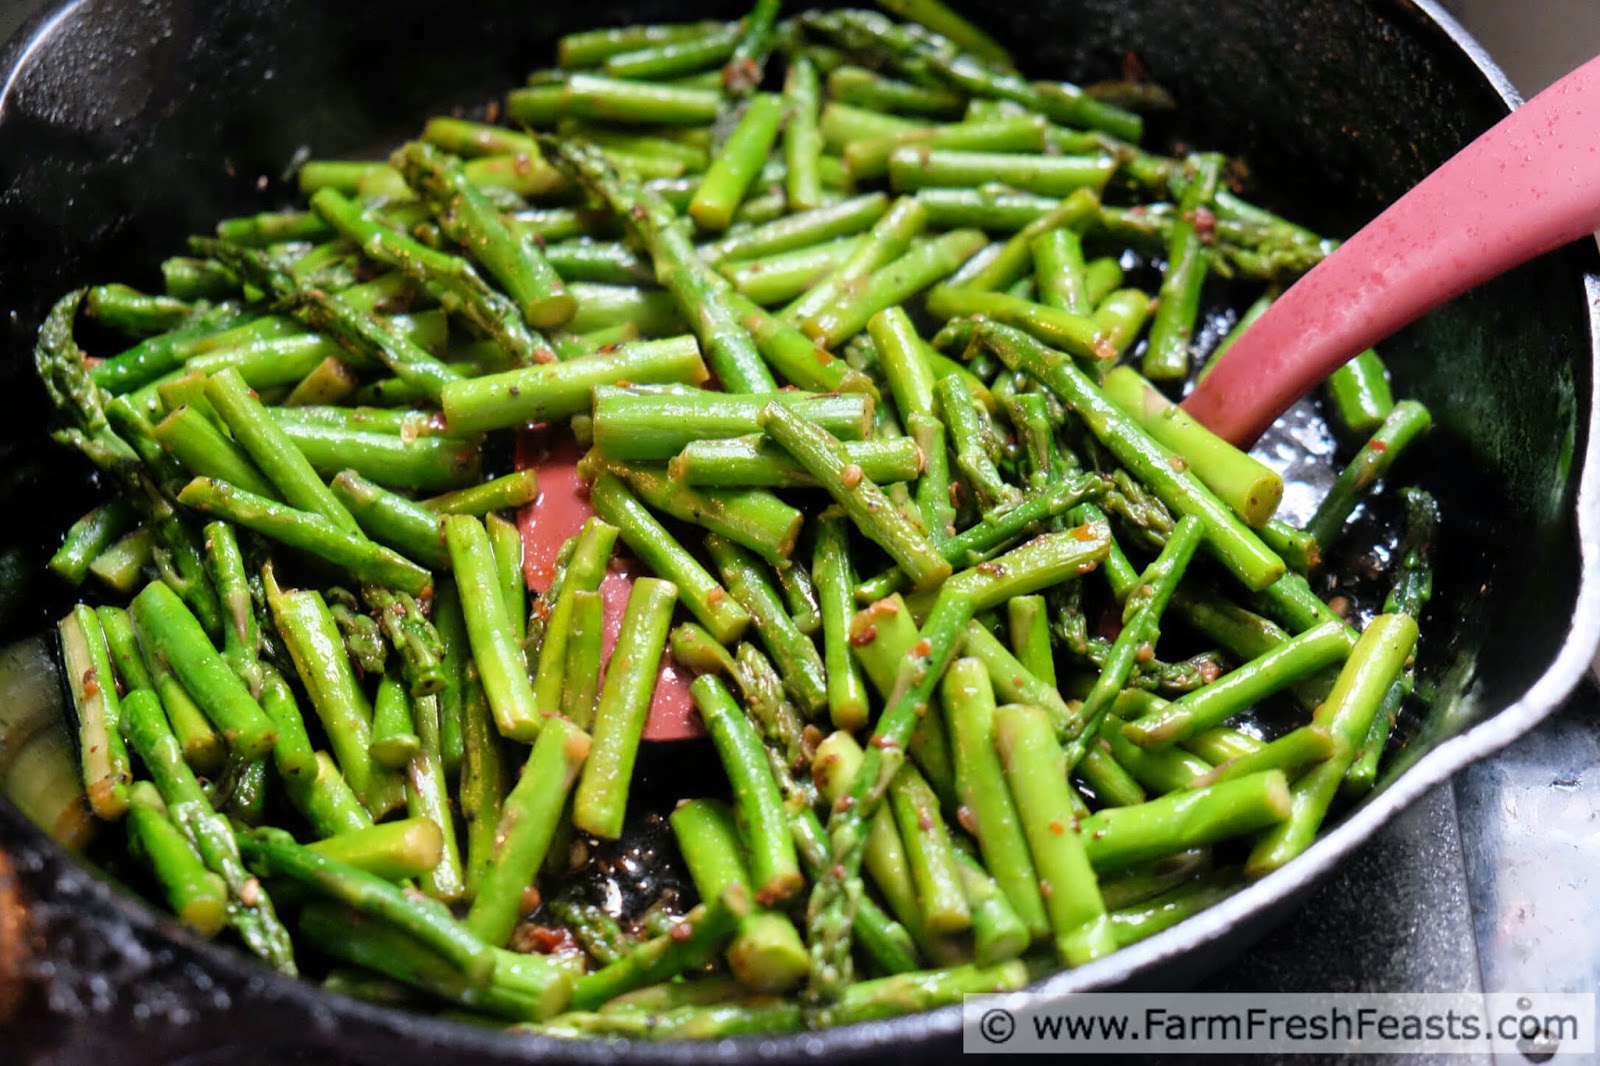 http://www.farmfreshfeasts.com/2015/04/szechuan-asparagus-with-ma-po-sauce.html